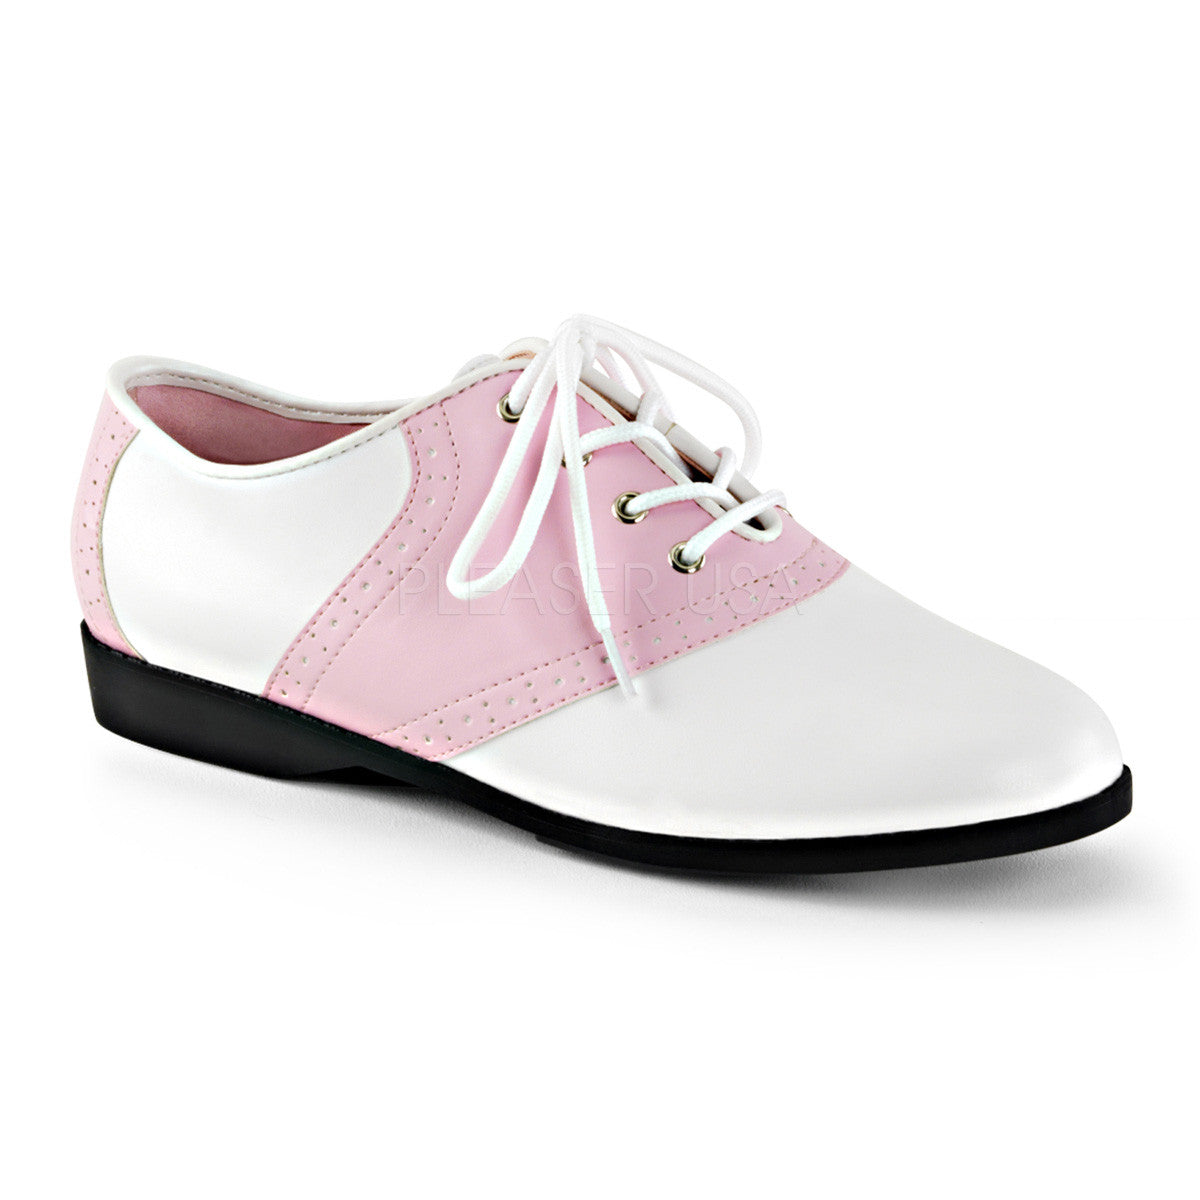 Funtasma SADDLE-50 Baby Pink-White Pu Saddle Shoes - Shoecup.com